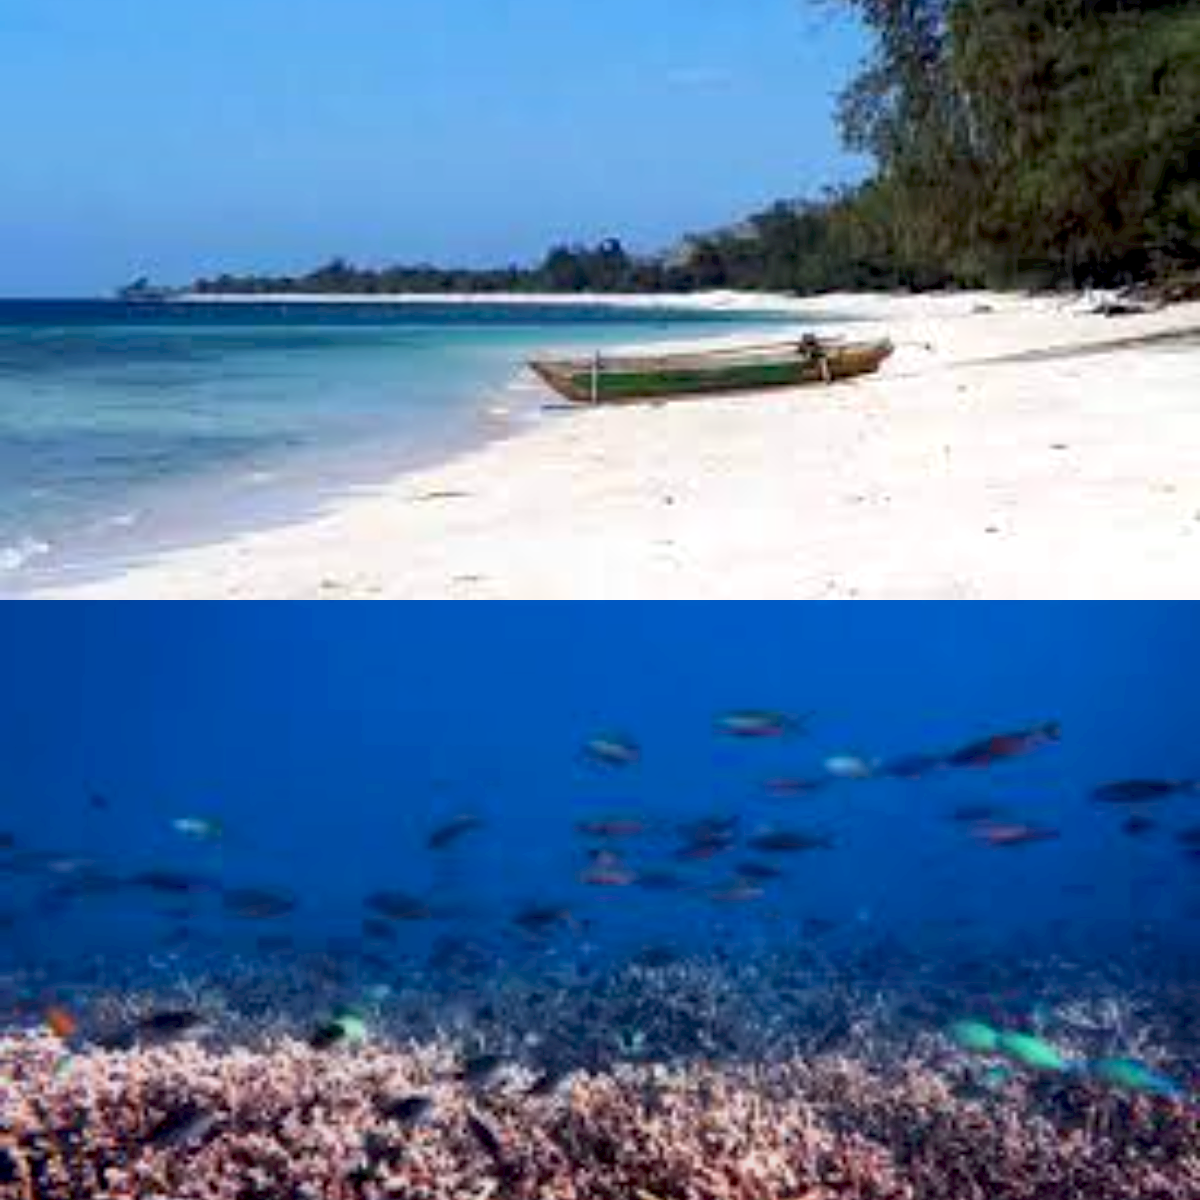 Eksplorasi Keindahan Alami, Inilah Keunikan Pantai Puru Kambera di Pulau Sumba!